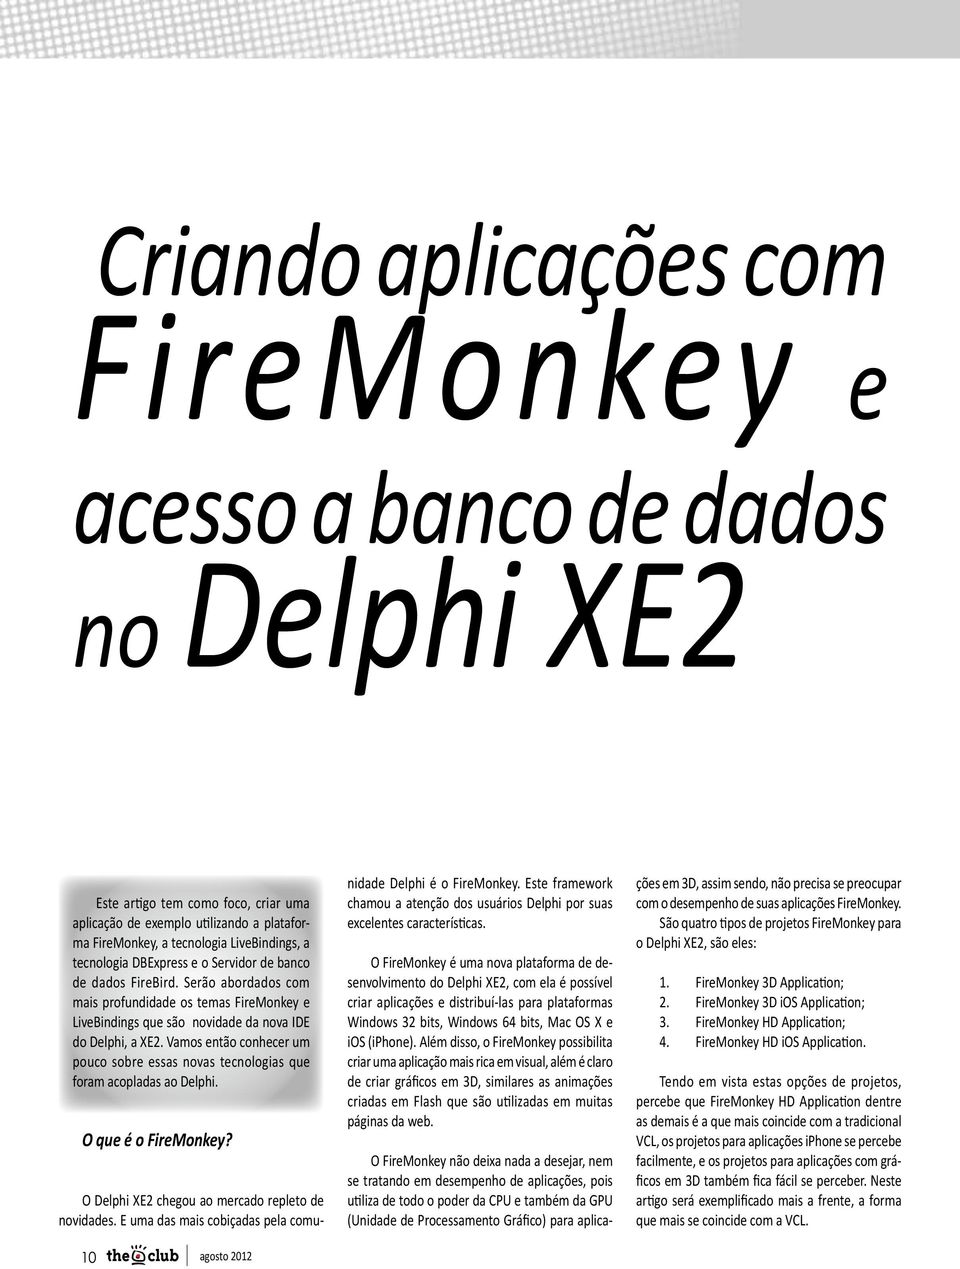 Vamos então conhecer um pouco sobre essas novas tecnologias que foram acopladas ao Delphi. O que é o FireMonkey? O Delphi XE2 chegou ao mercado repleto de novidades.